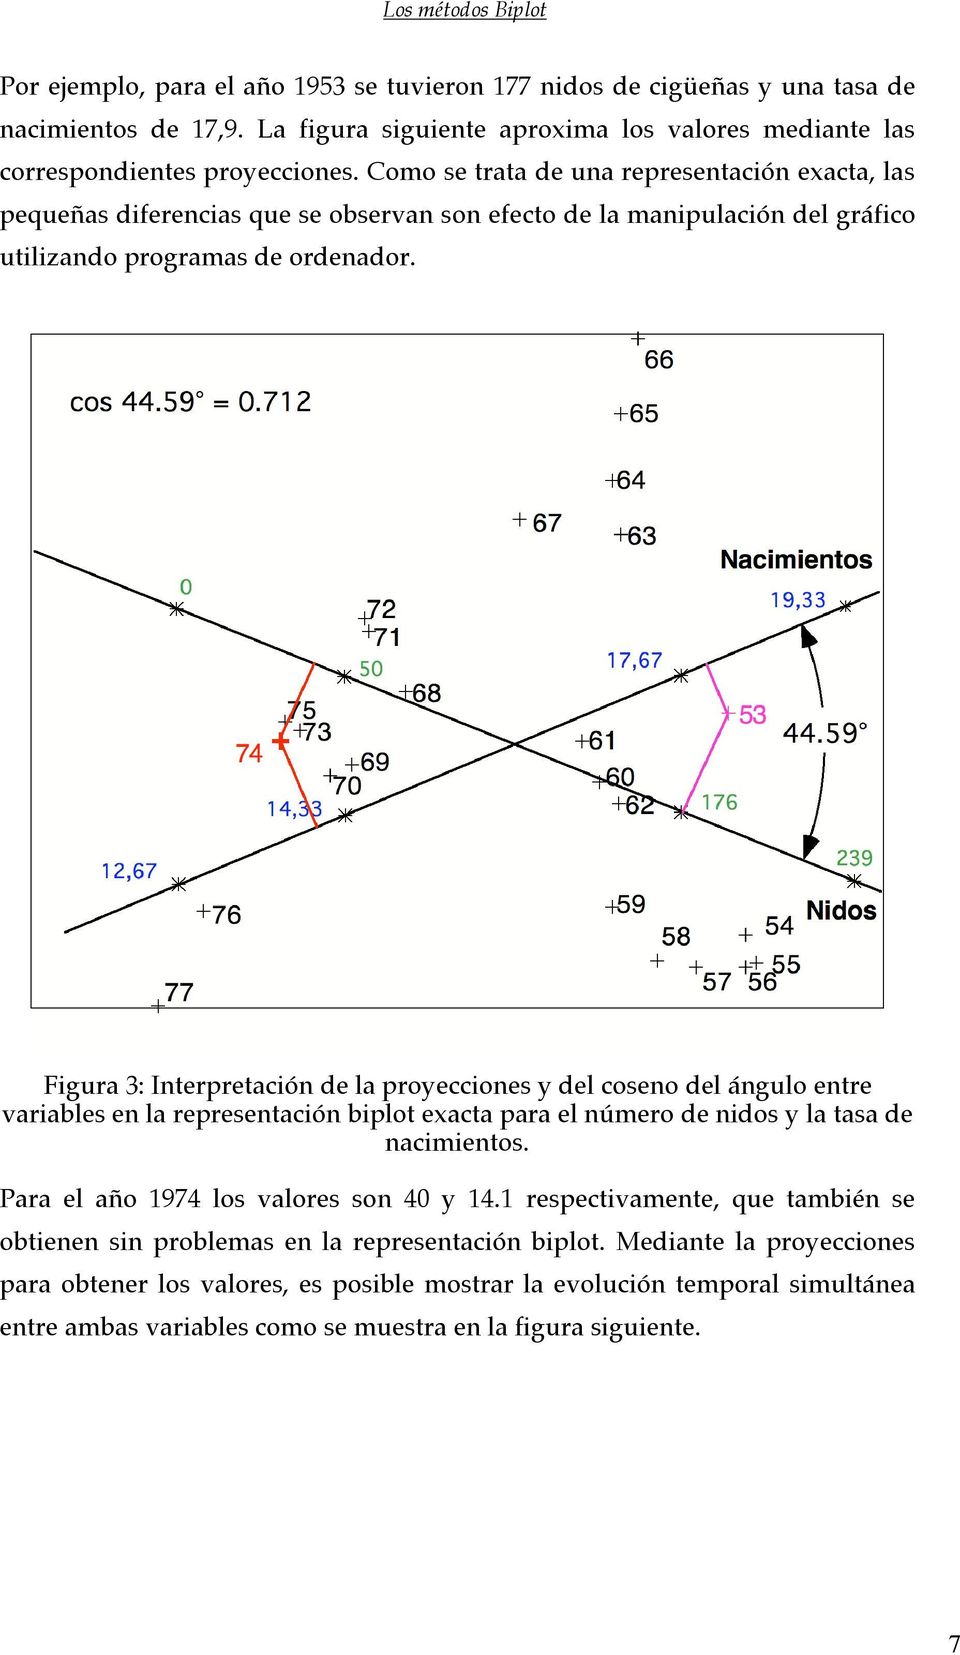 Figura 3: Interpretación de la proyecciones y del coseno del ángulo entre variables en la representación biplot exacta para el número de nidos y la tasa de nacimientos.